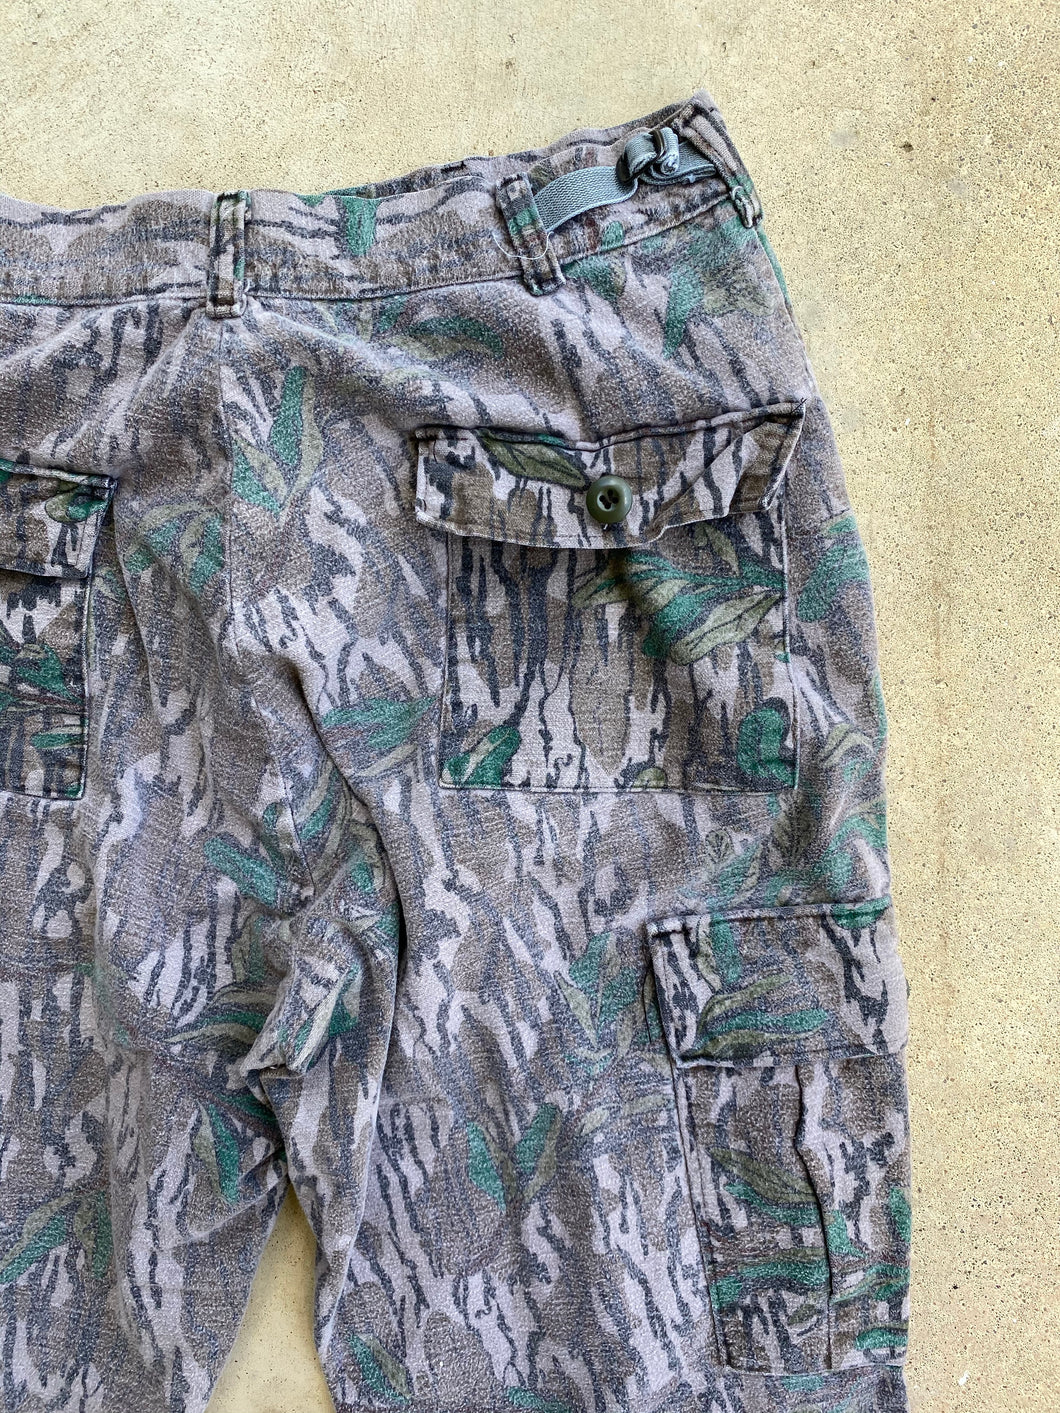 Mossy Oak Greenleaf Pants (~32x30)